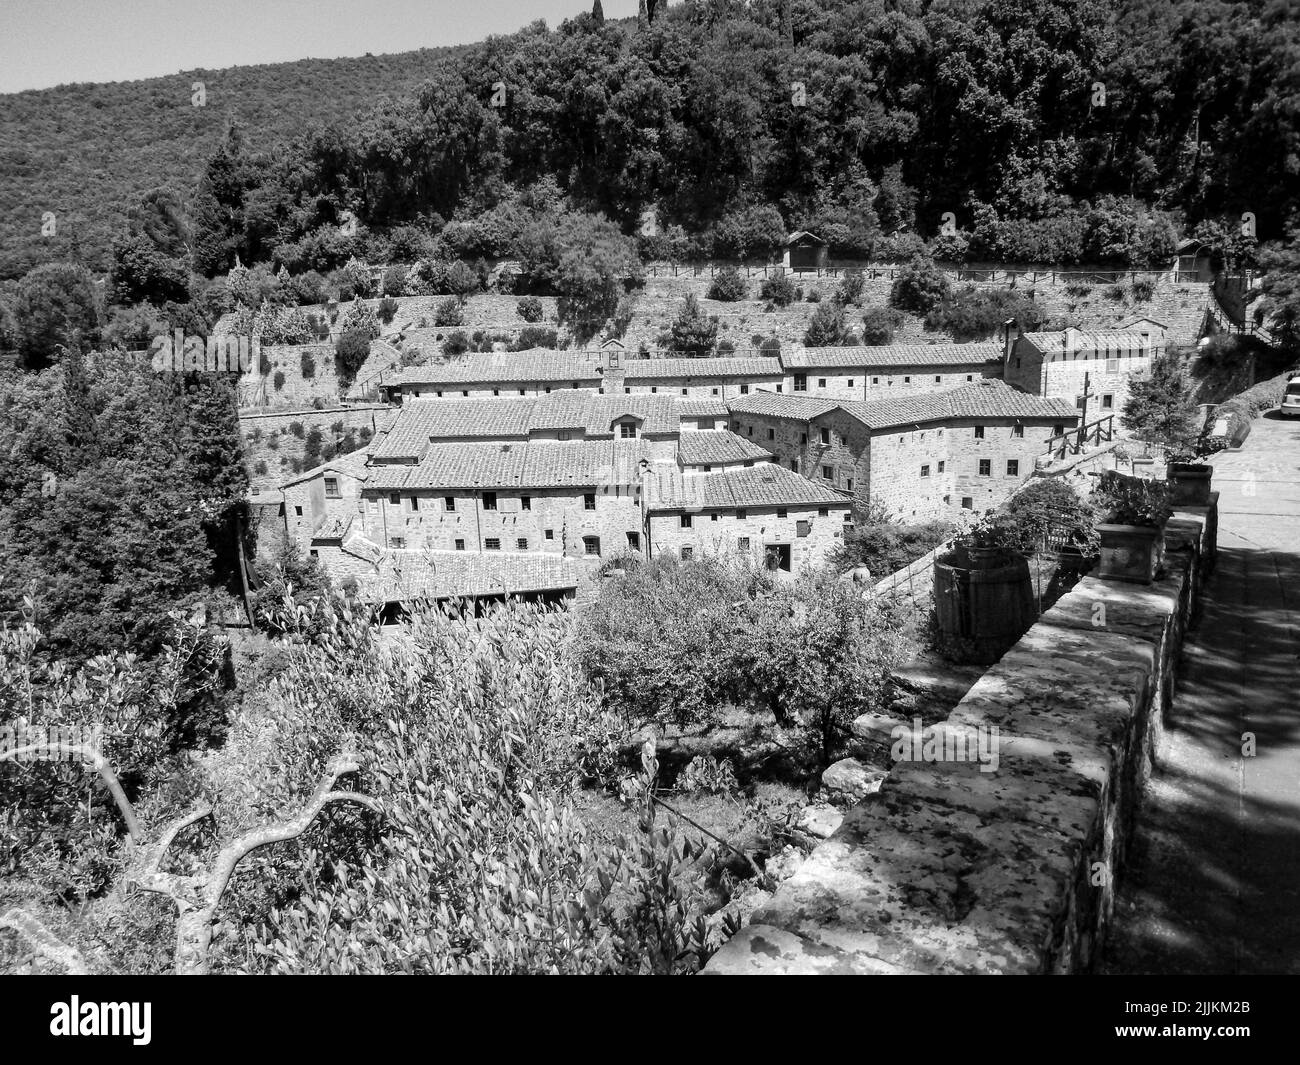 Une échelle de gris des bâtiments du Couvent du celle dans les bois - Cortona, Italie Banque D'Images